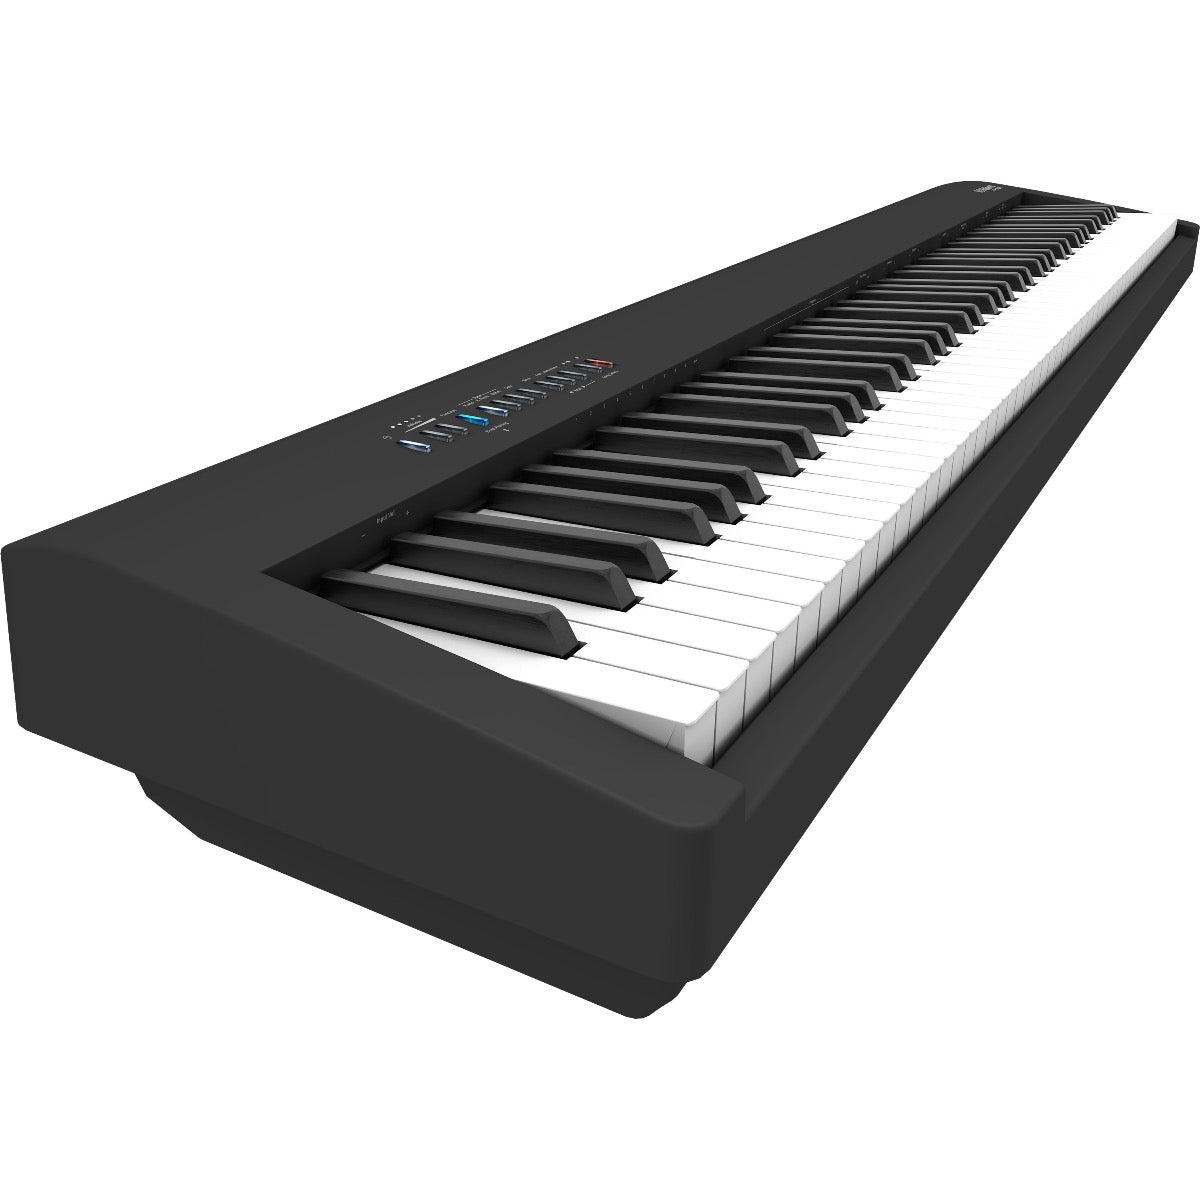 Roland FP-30X Digital Piano - Black COMPLETE HOME BUNDLE PLUS